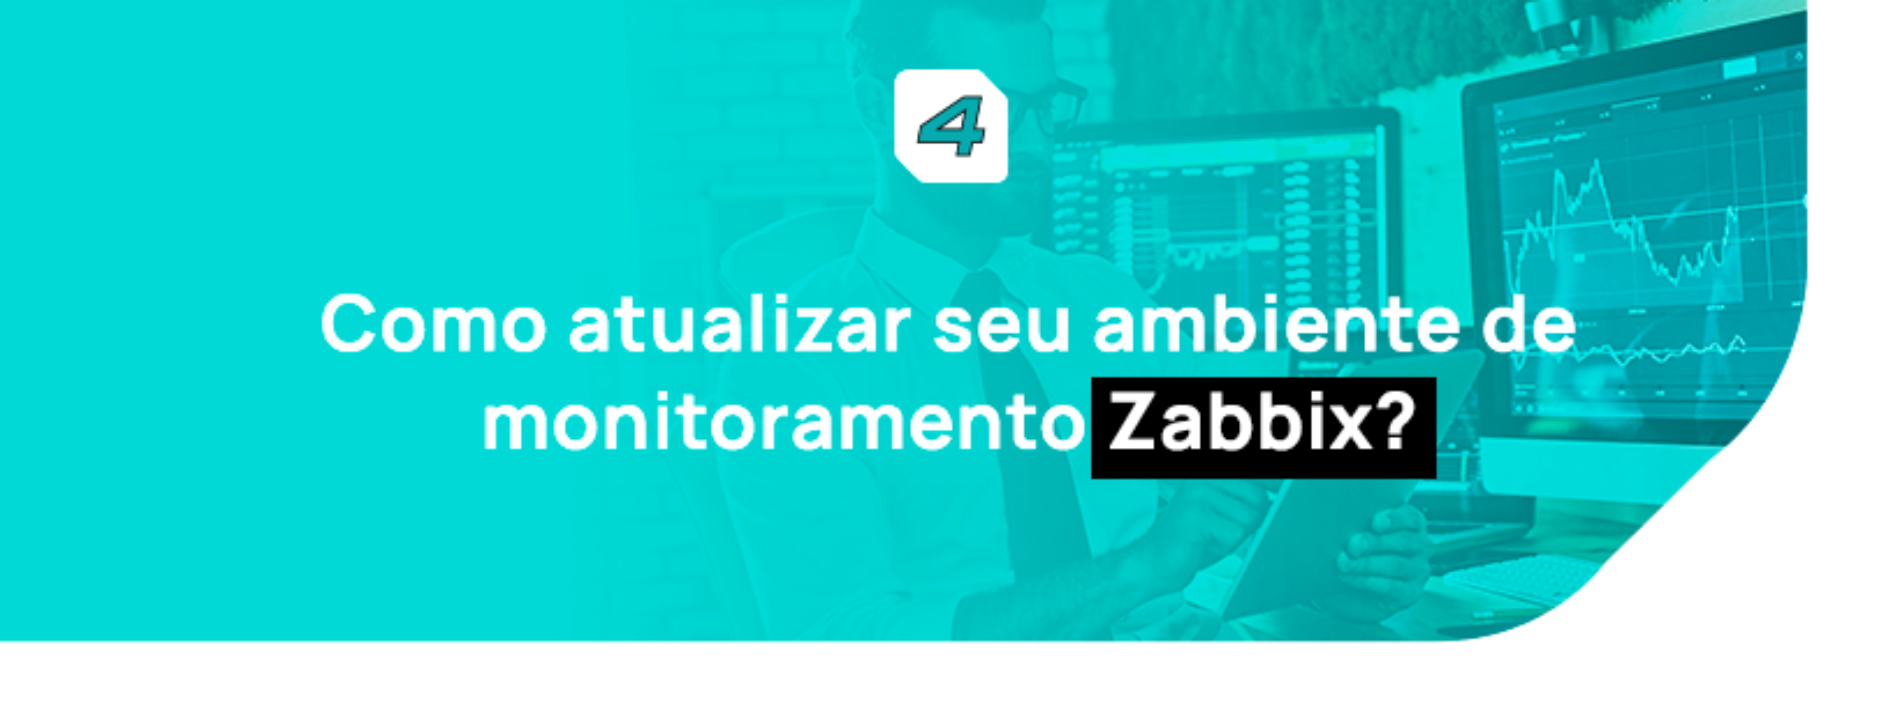 Como atualizar seu ambiente de monitoramento Zabbix?